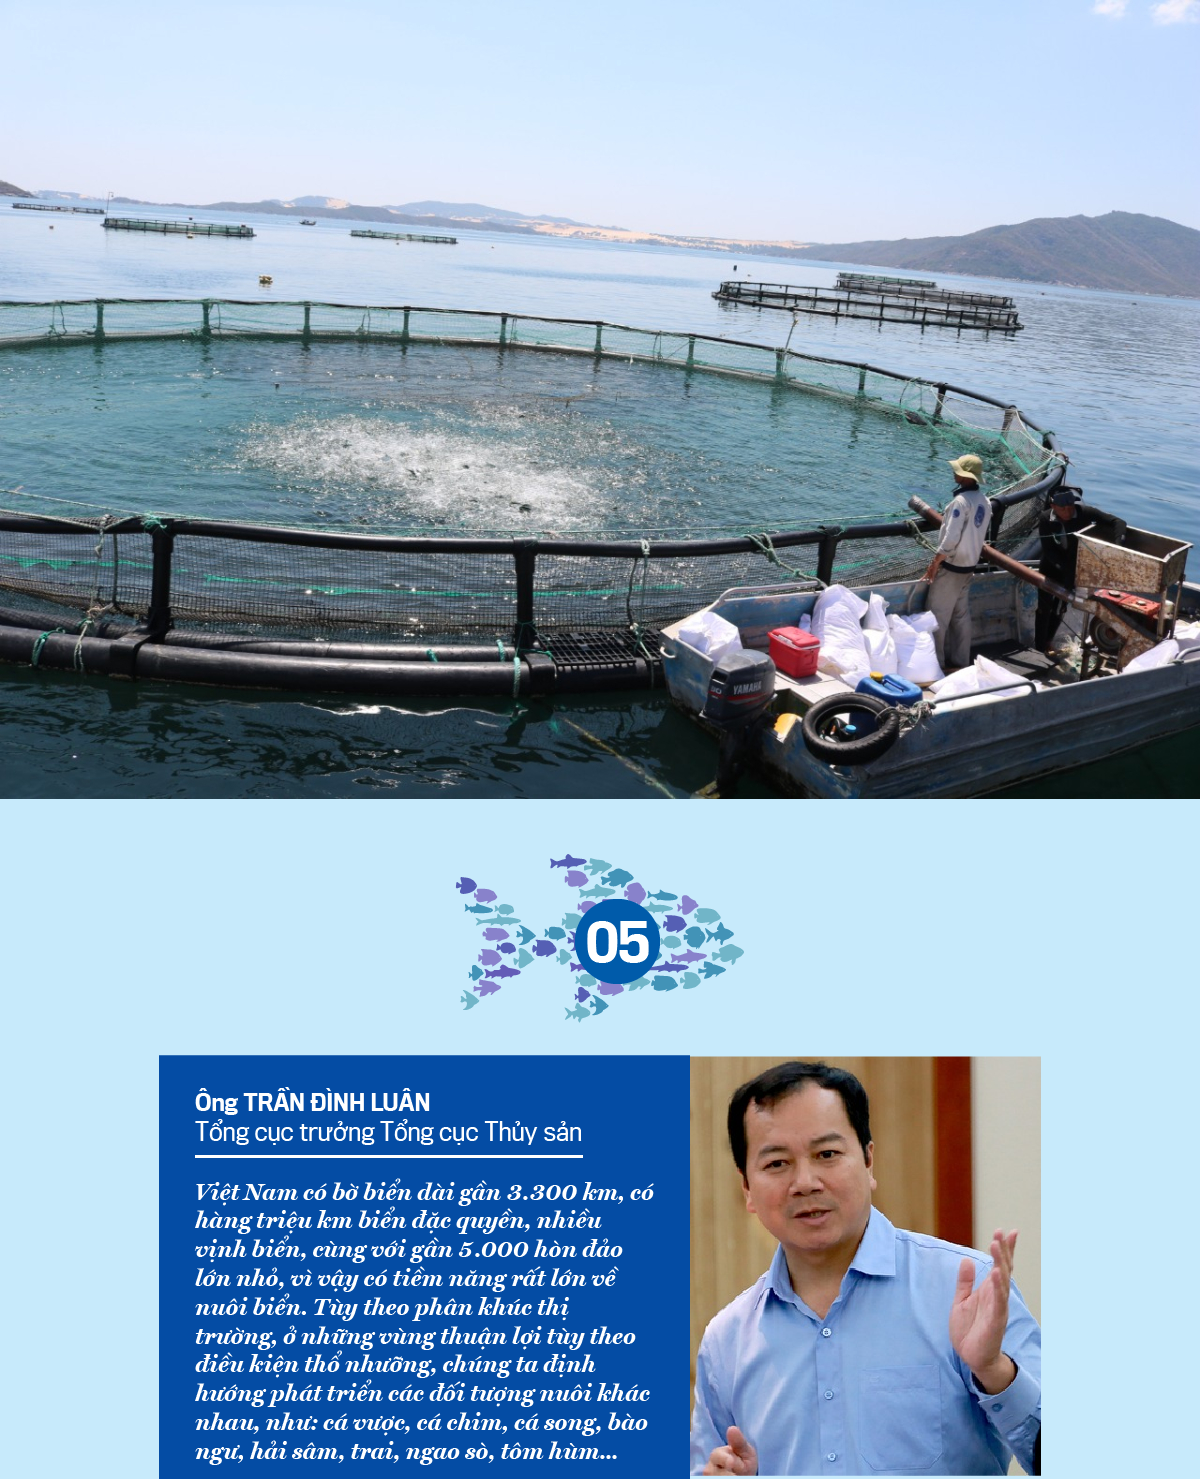 Hóa giải các thách thức trong nuôi trồng thủy sản - Ảnh 6